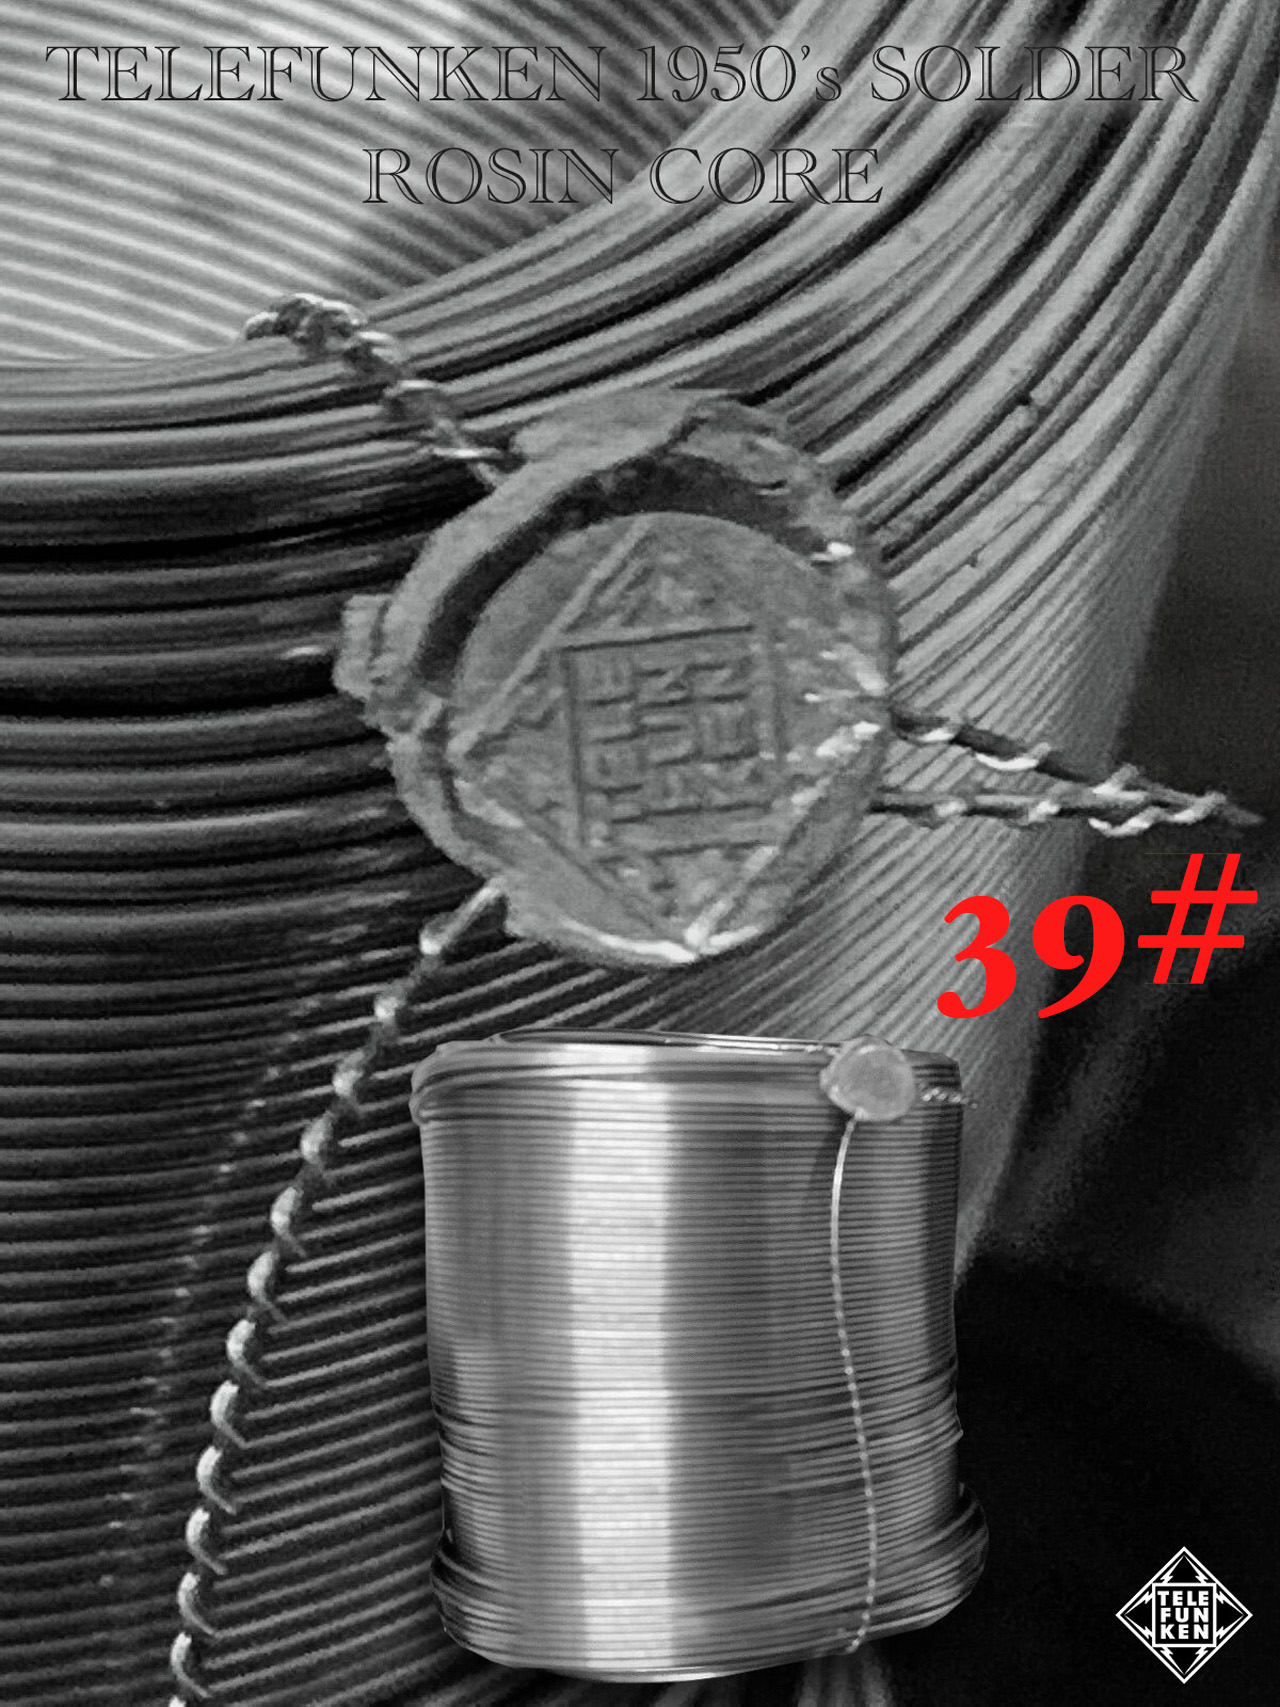 【39#】TELEFUNKEN 1950’s SOLDER ROSIN CORE（直径1ミリ）20cm = 900円画像